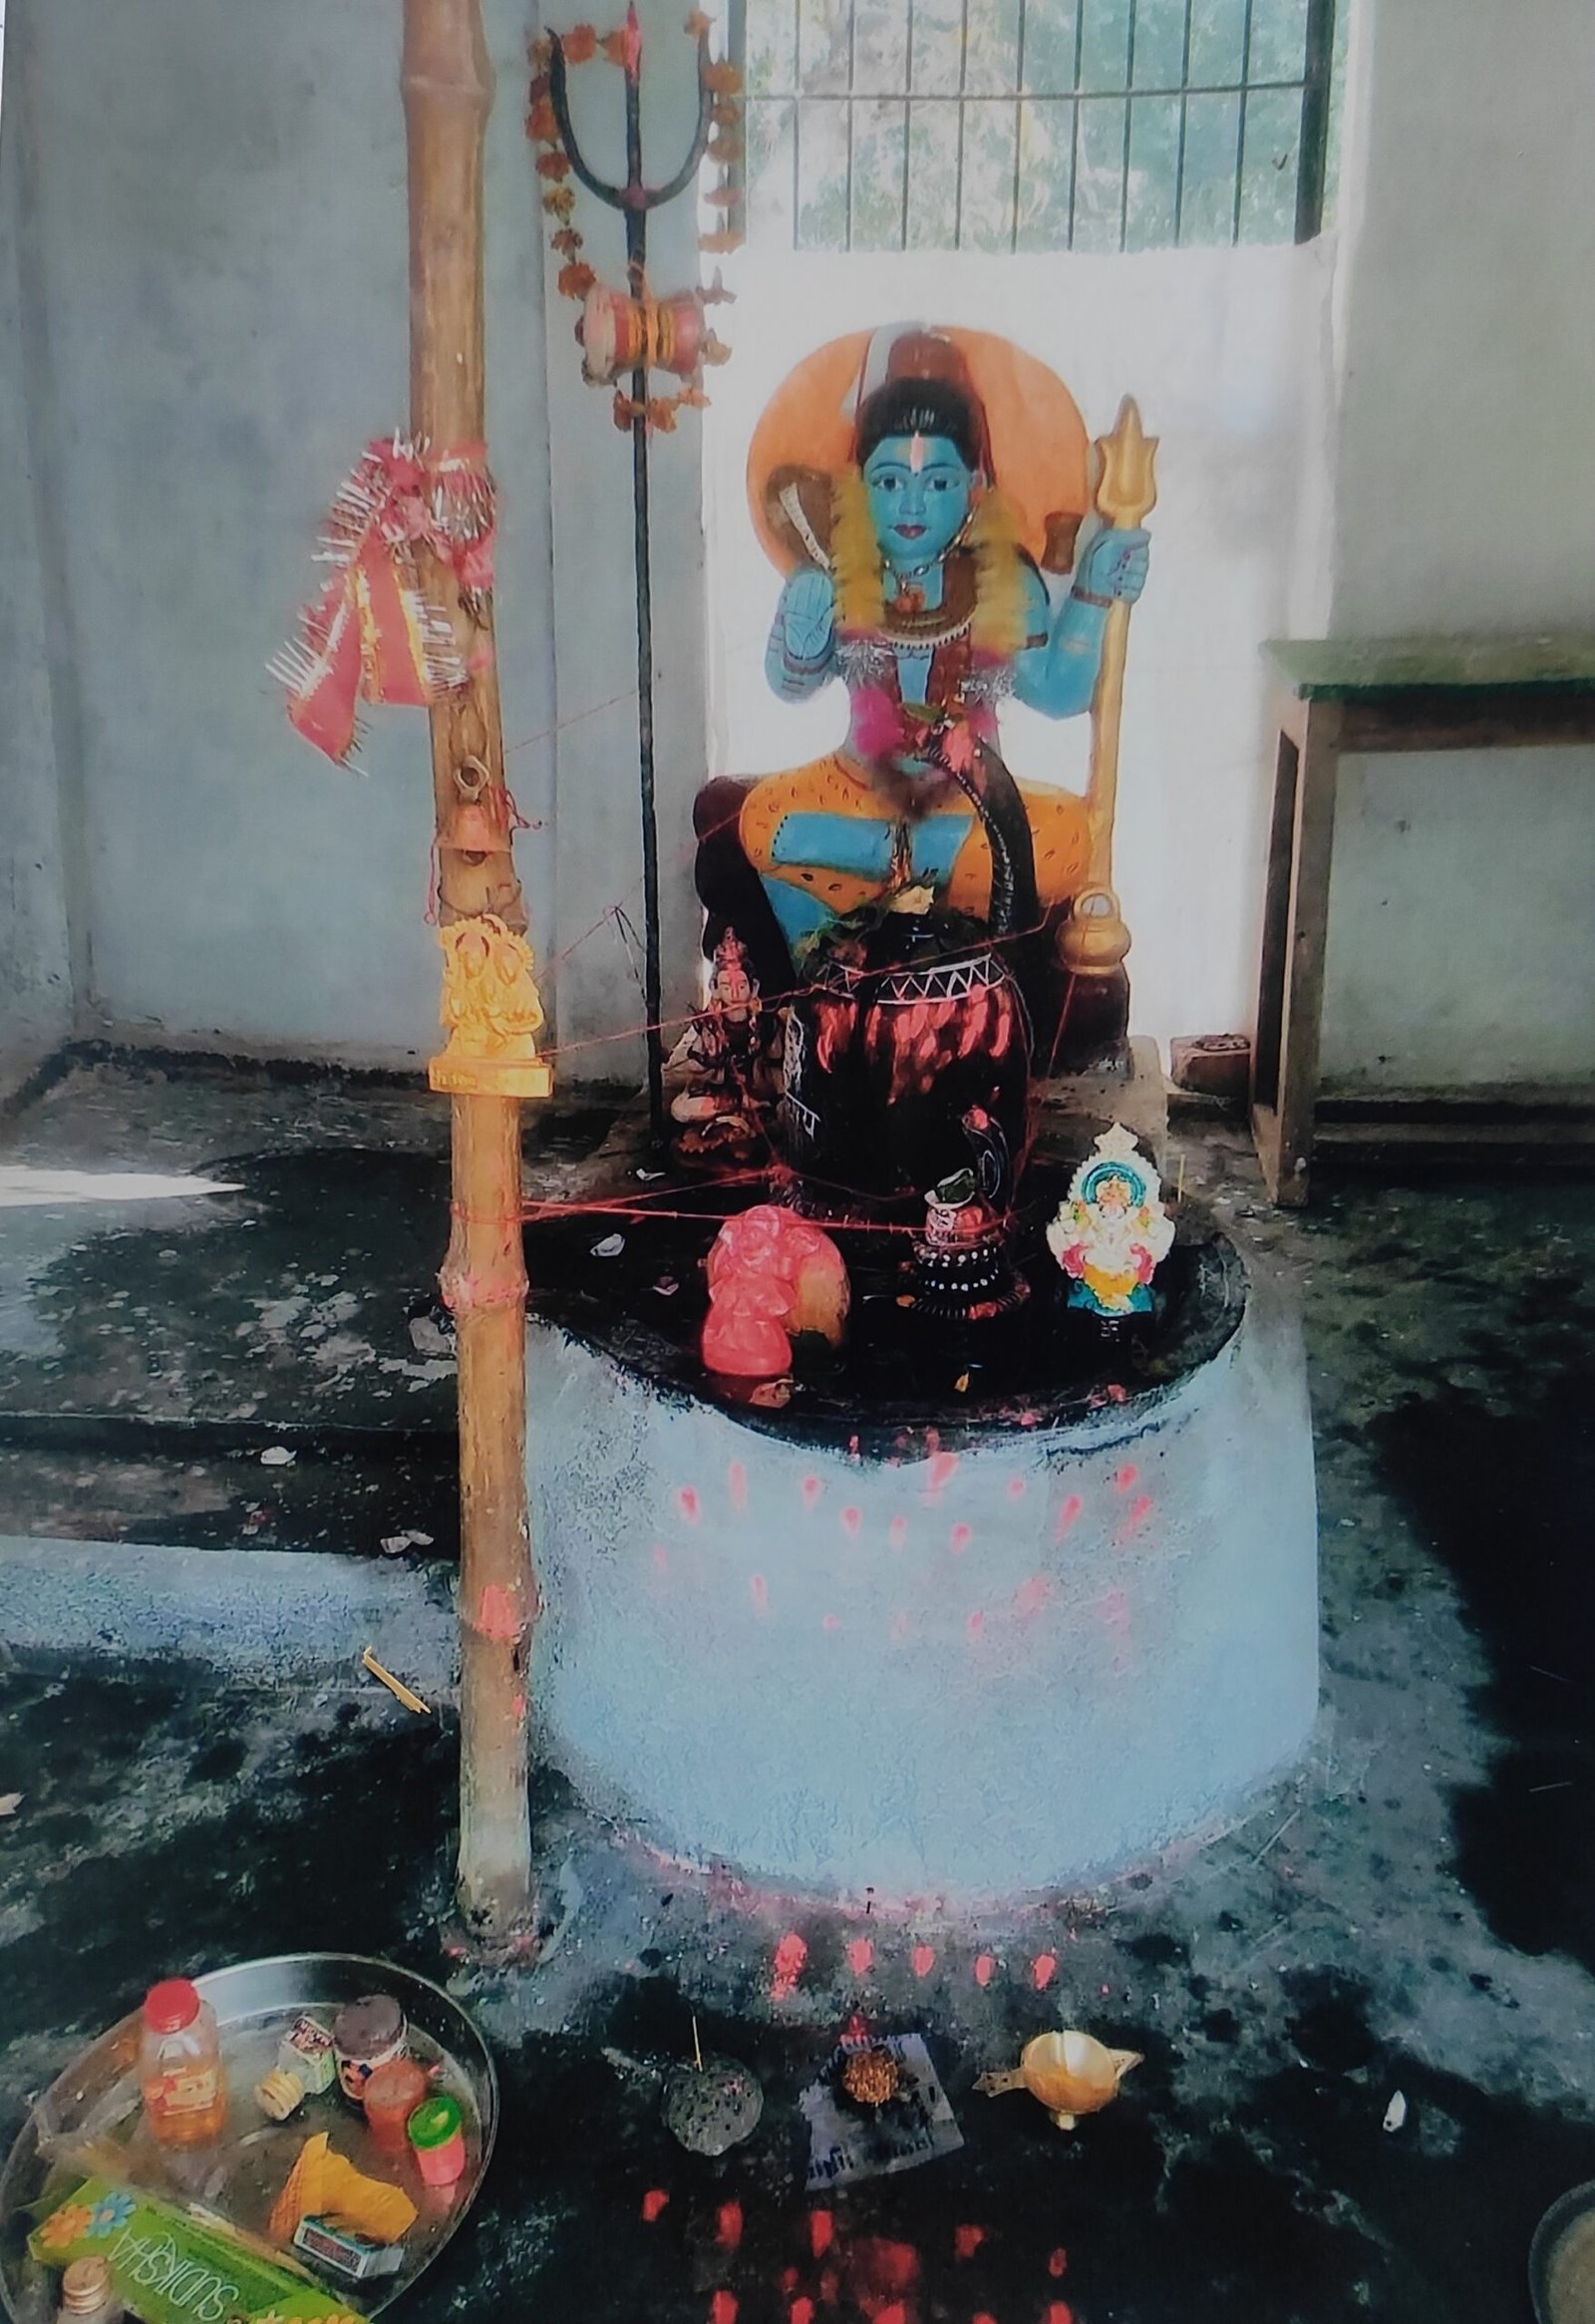 प्राचीन शिव मंदिर के पास फैली गंदगी को लेकर, की शिकायत, नहीं हुई कार्रवाई